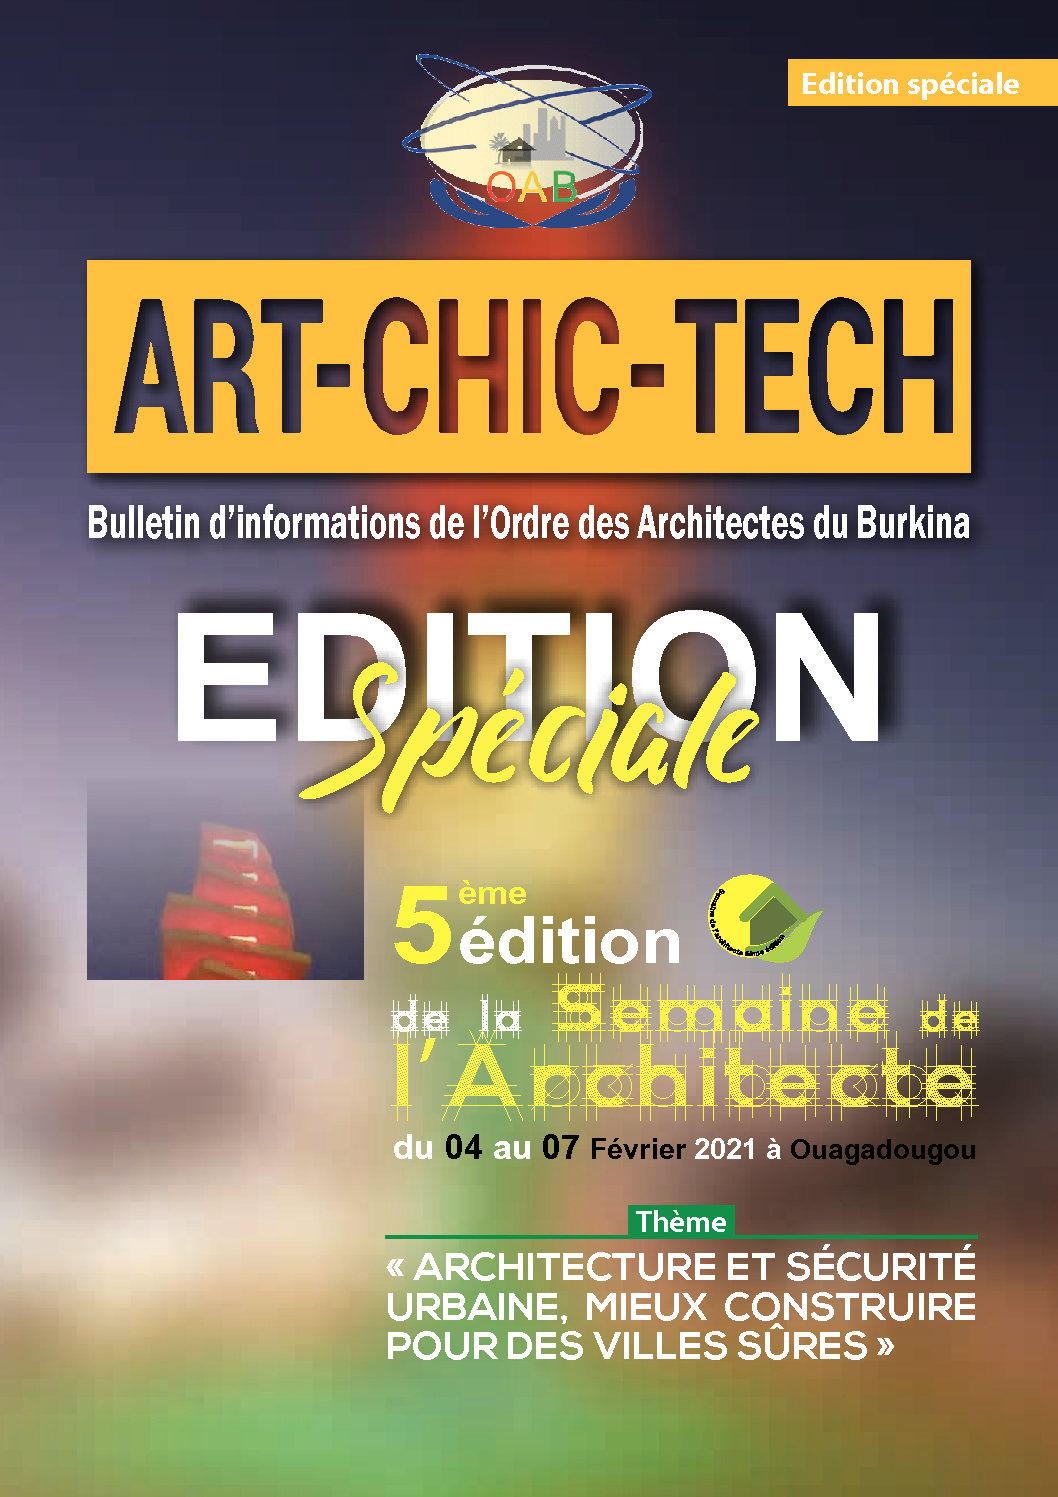 Edition Speciale – 5eme edition de  la semaine de l’architecte